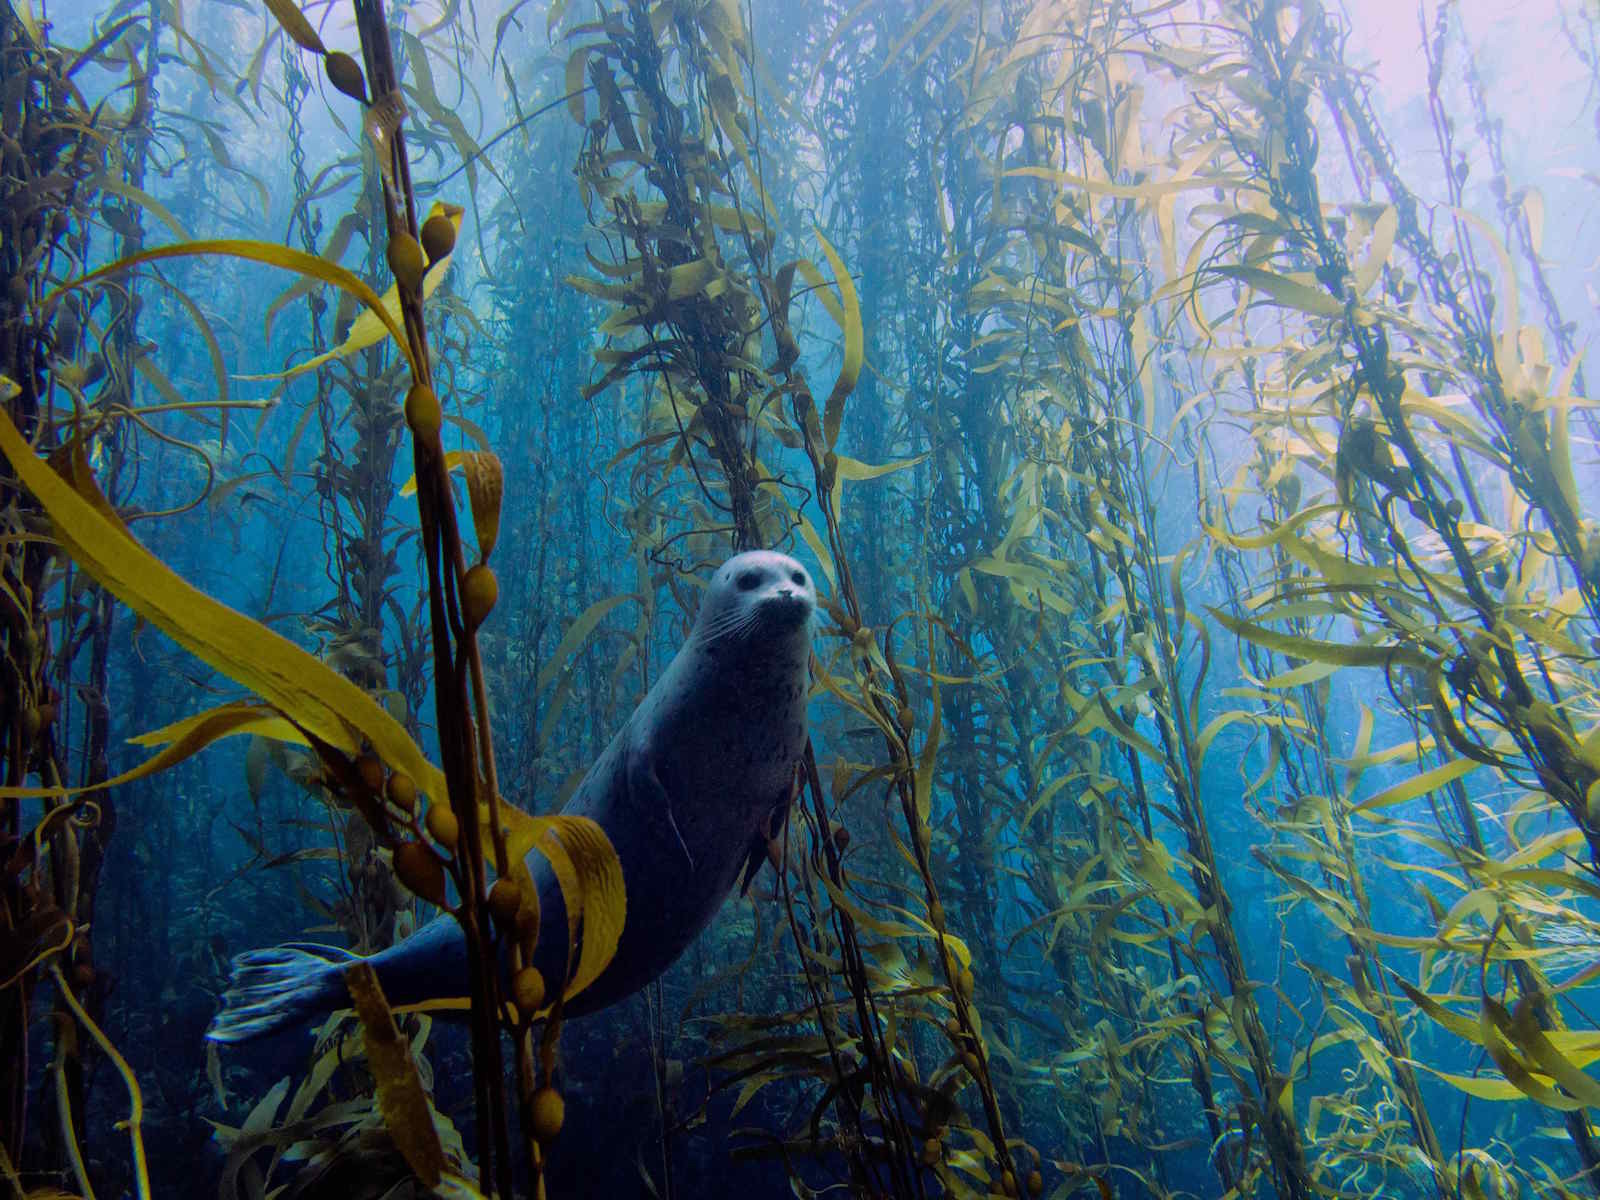 Тюлень в настоящем подводном лесу, который образуют длинные стебли водорослей. Моря и океаны, интересное, подводный мир